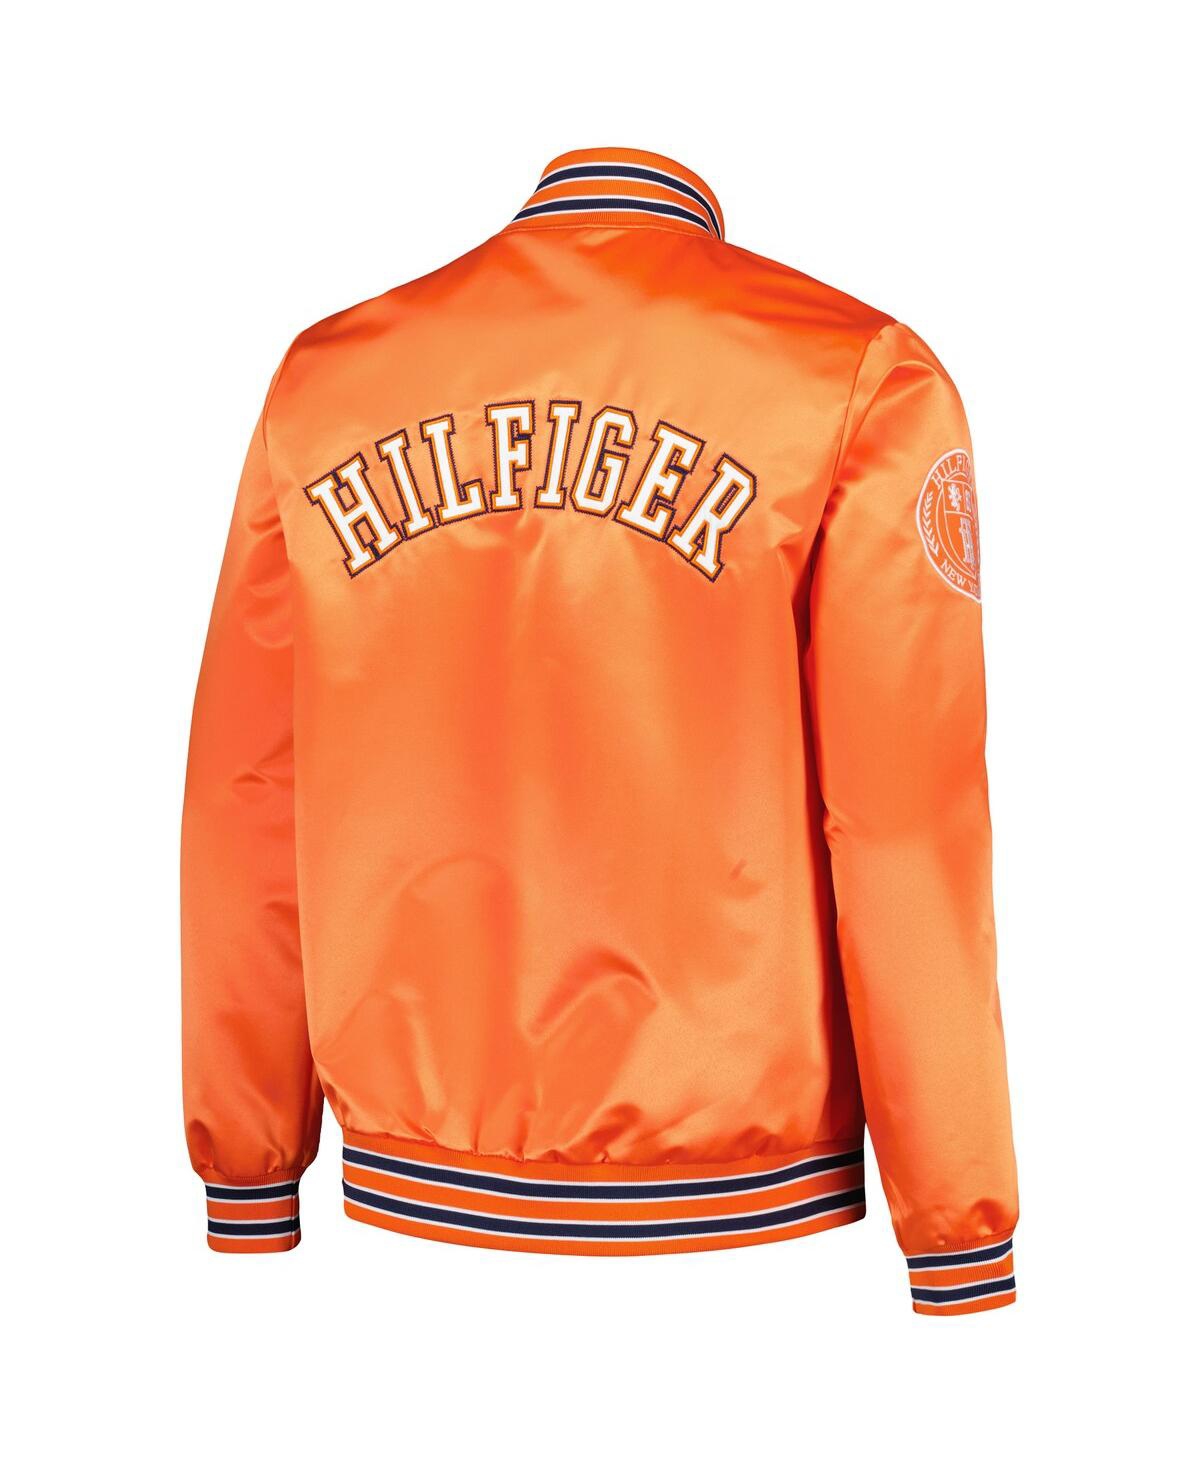 Shop Tommy Hilfiger Men's  Orange Denver Broncos Elliot Varsity Full-snap Jacket